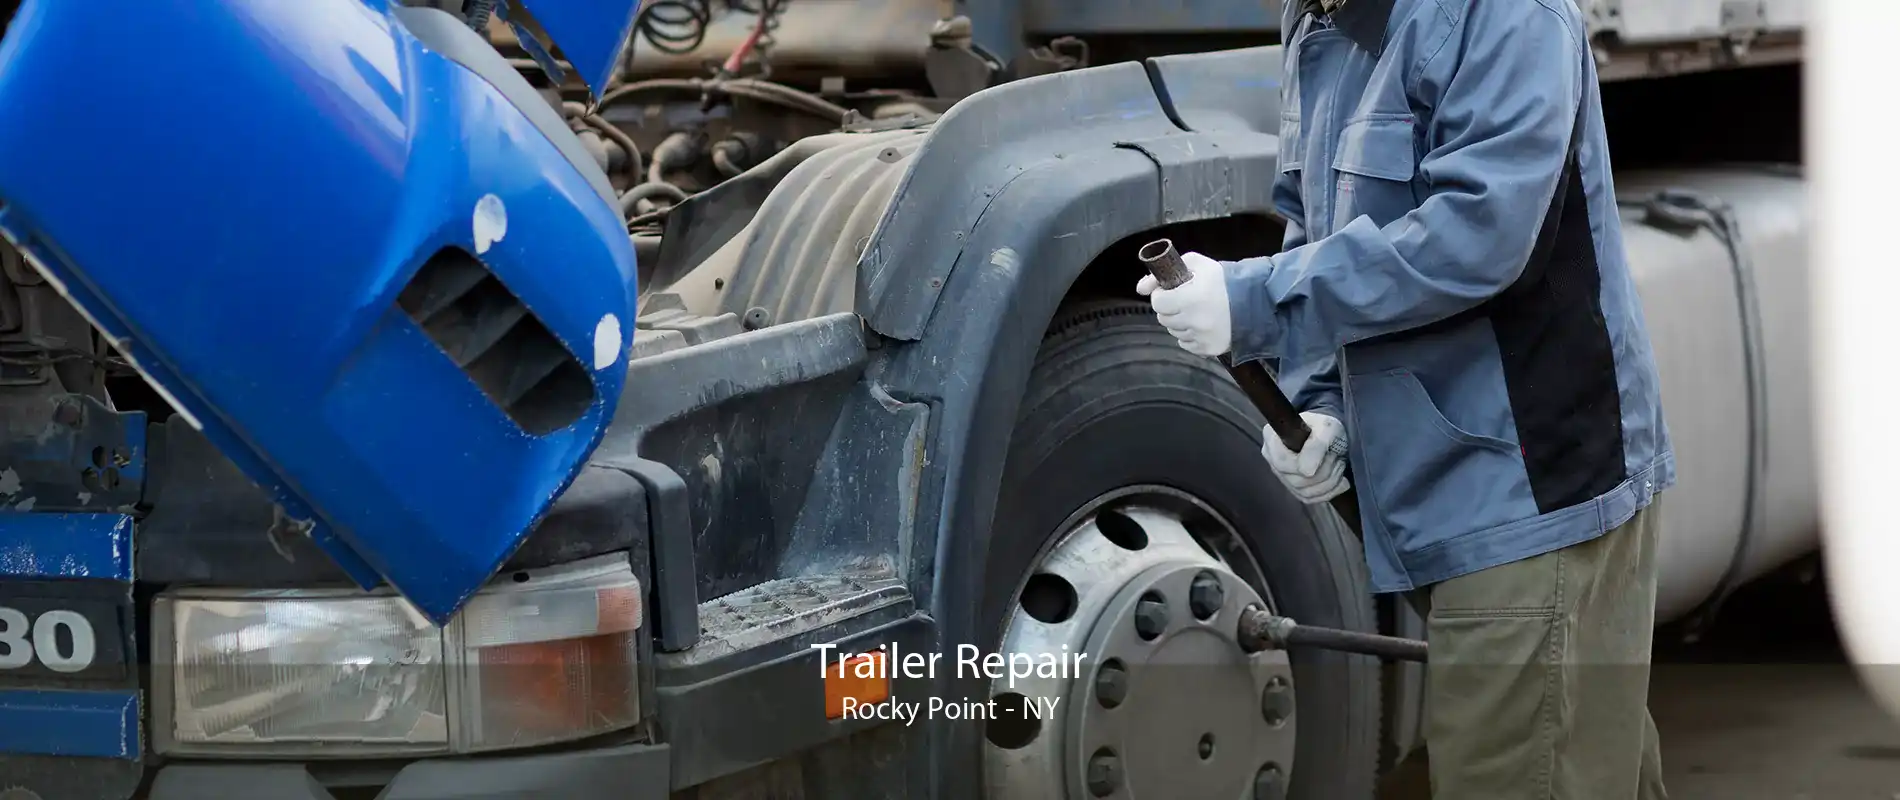 Trailer Repair Rocky Point - NY